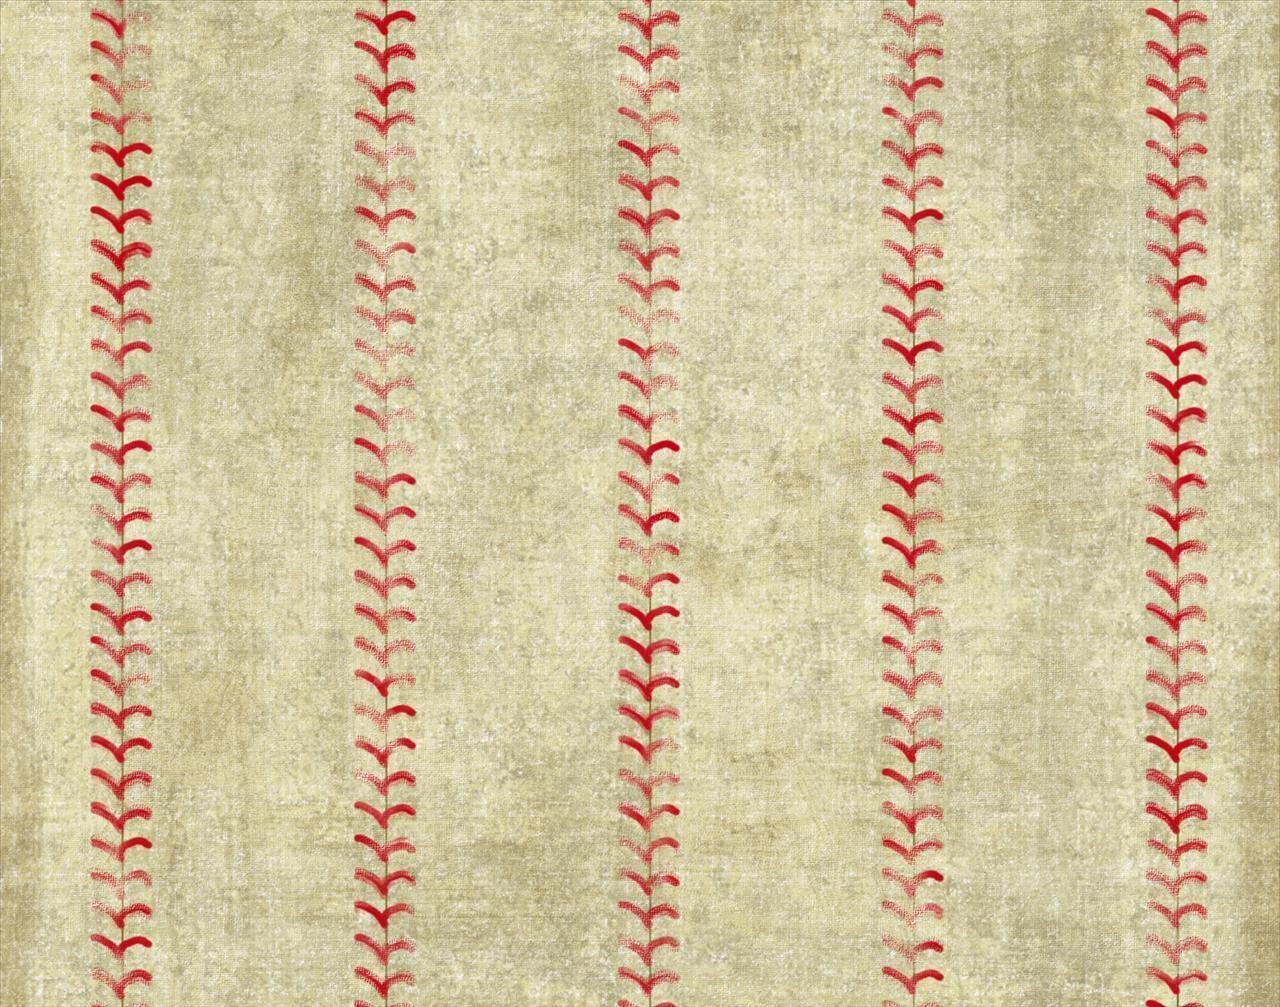 Free Baseball Background